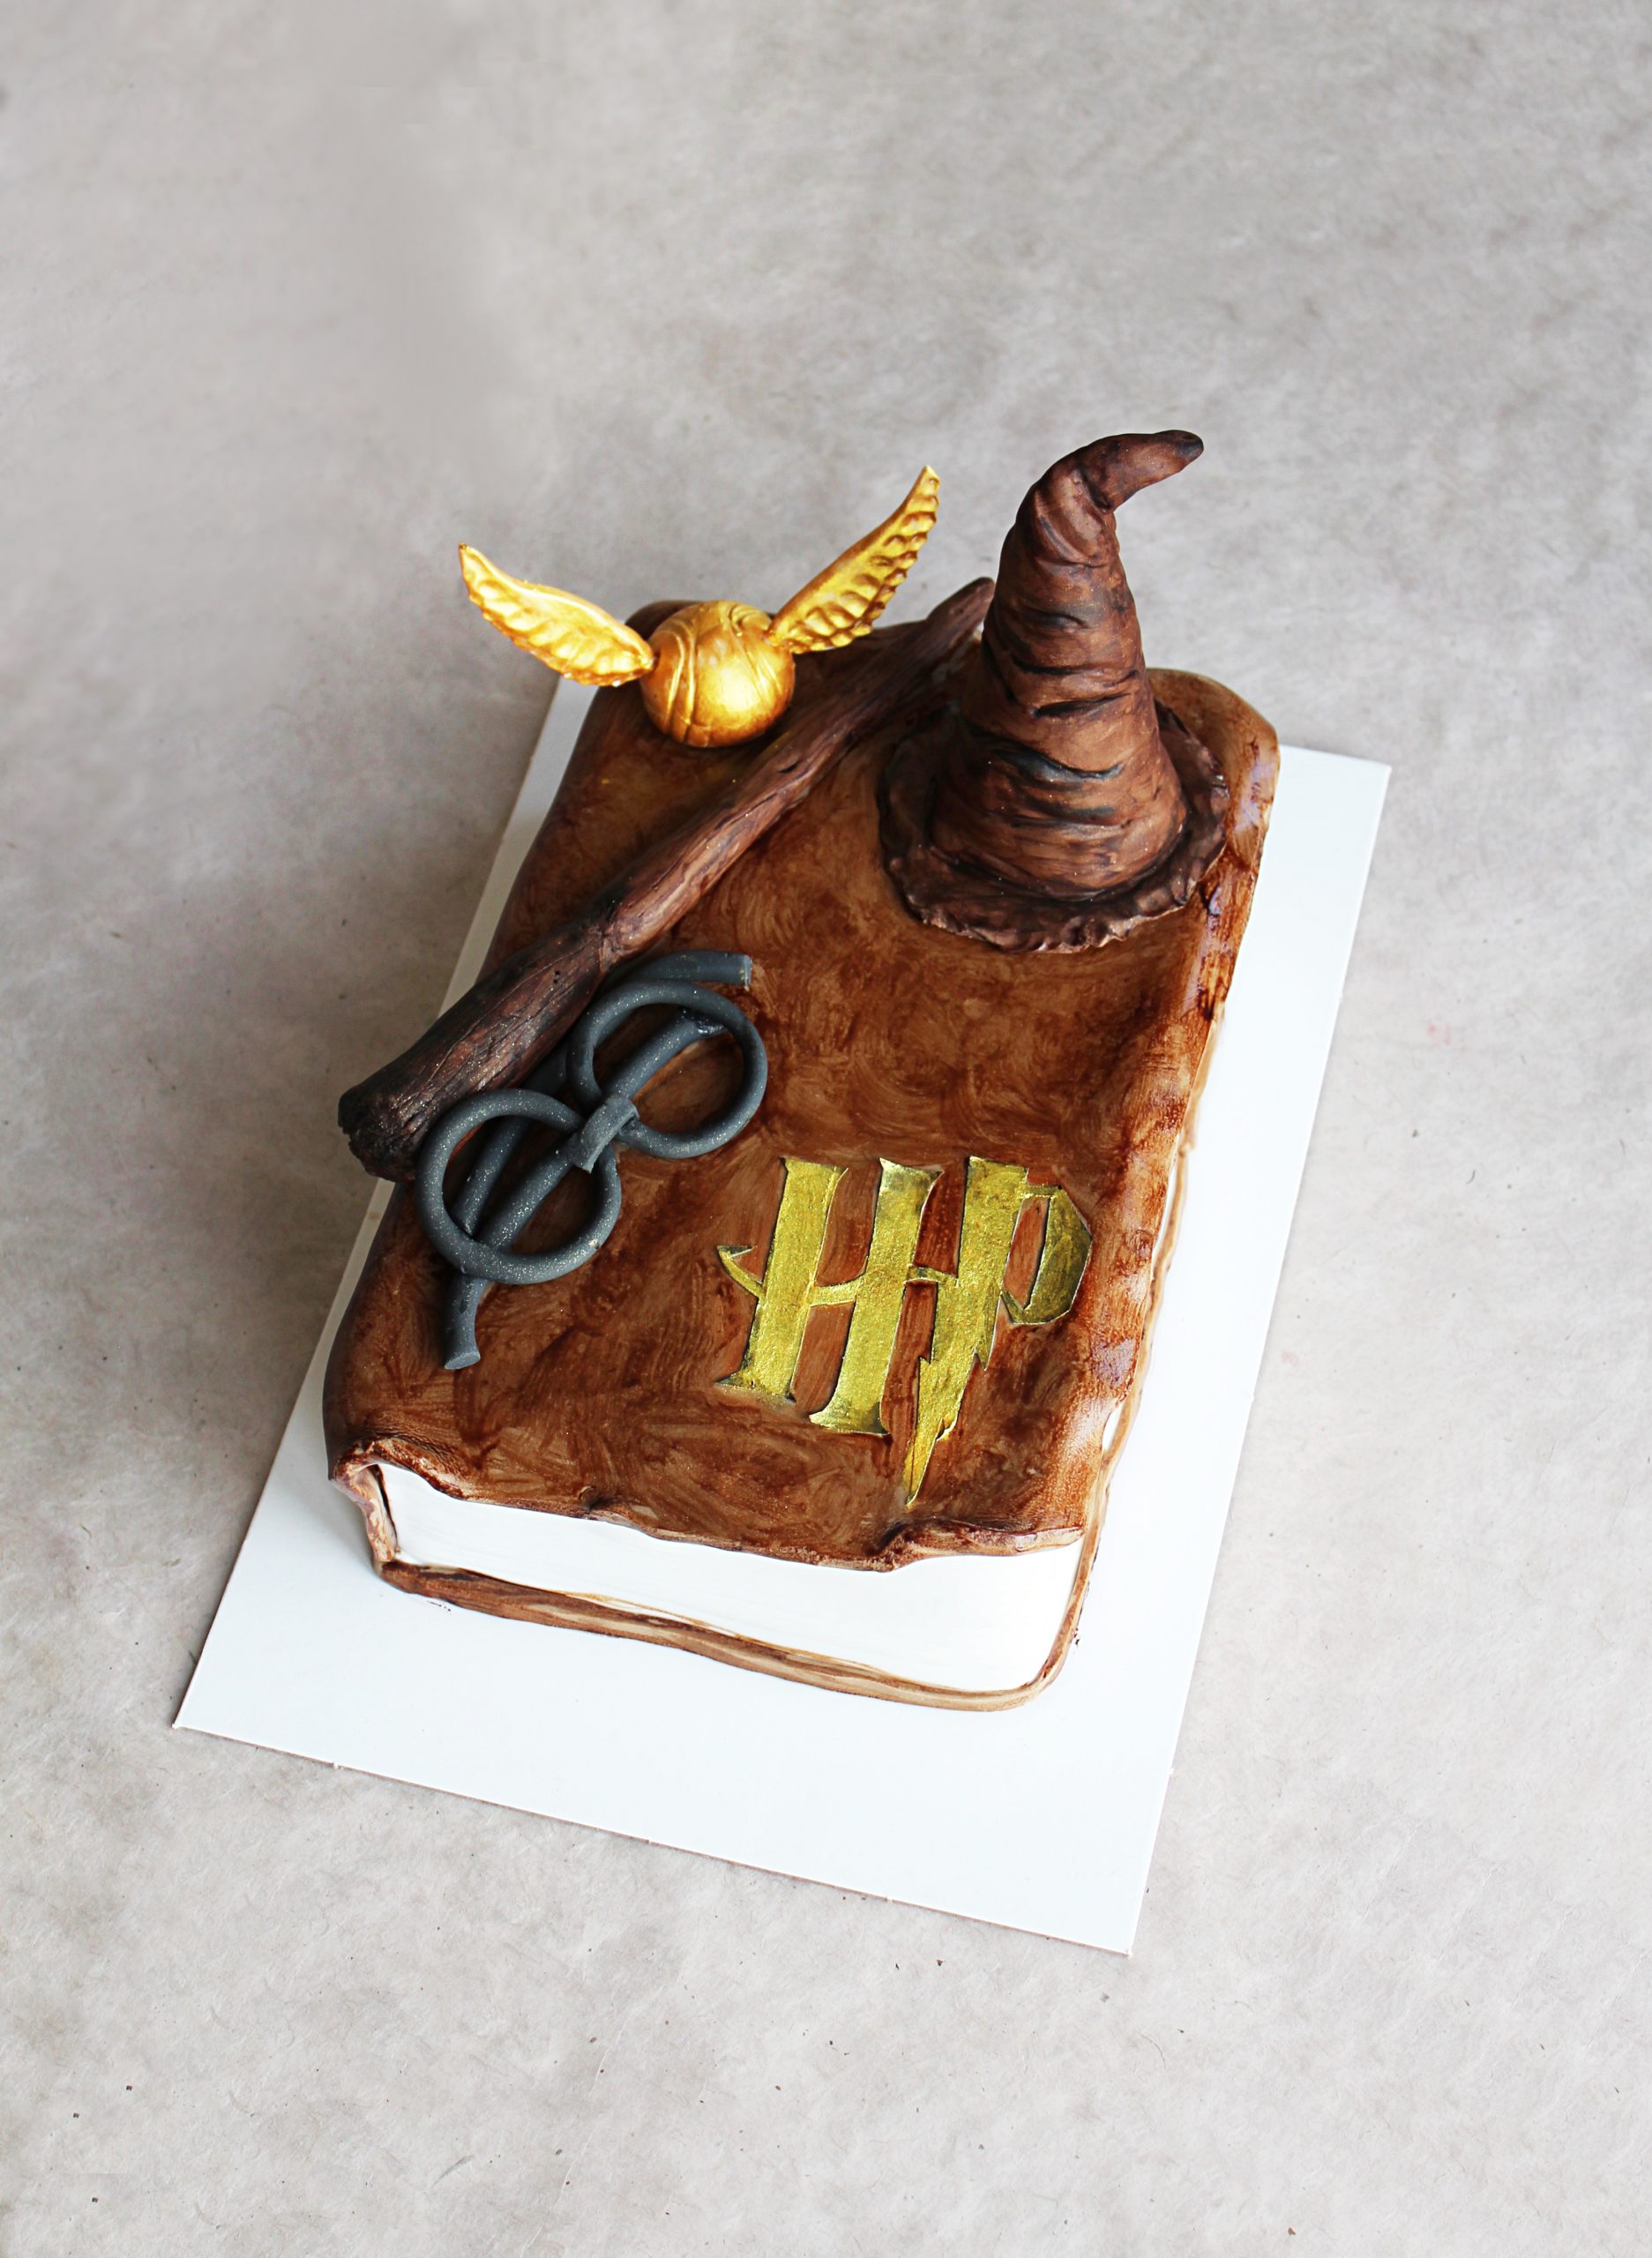 Gâteau Harry Potter décoration chocogrenouille et magie vegan et sa